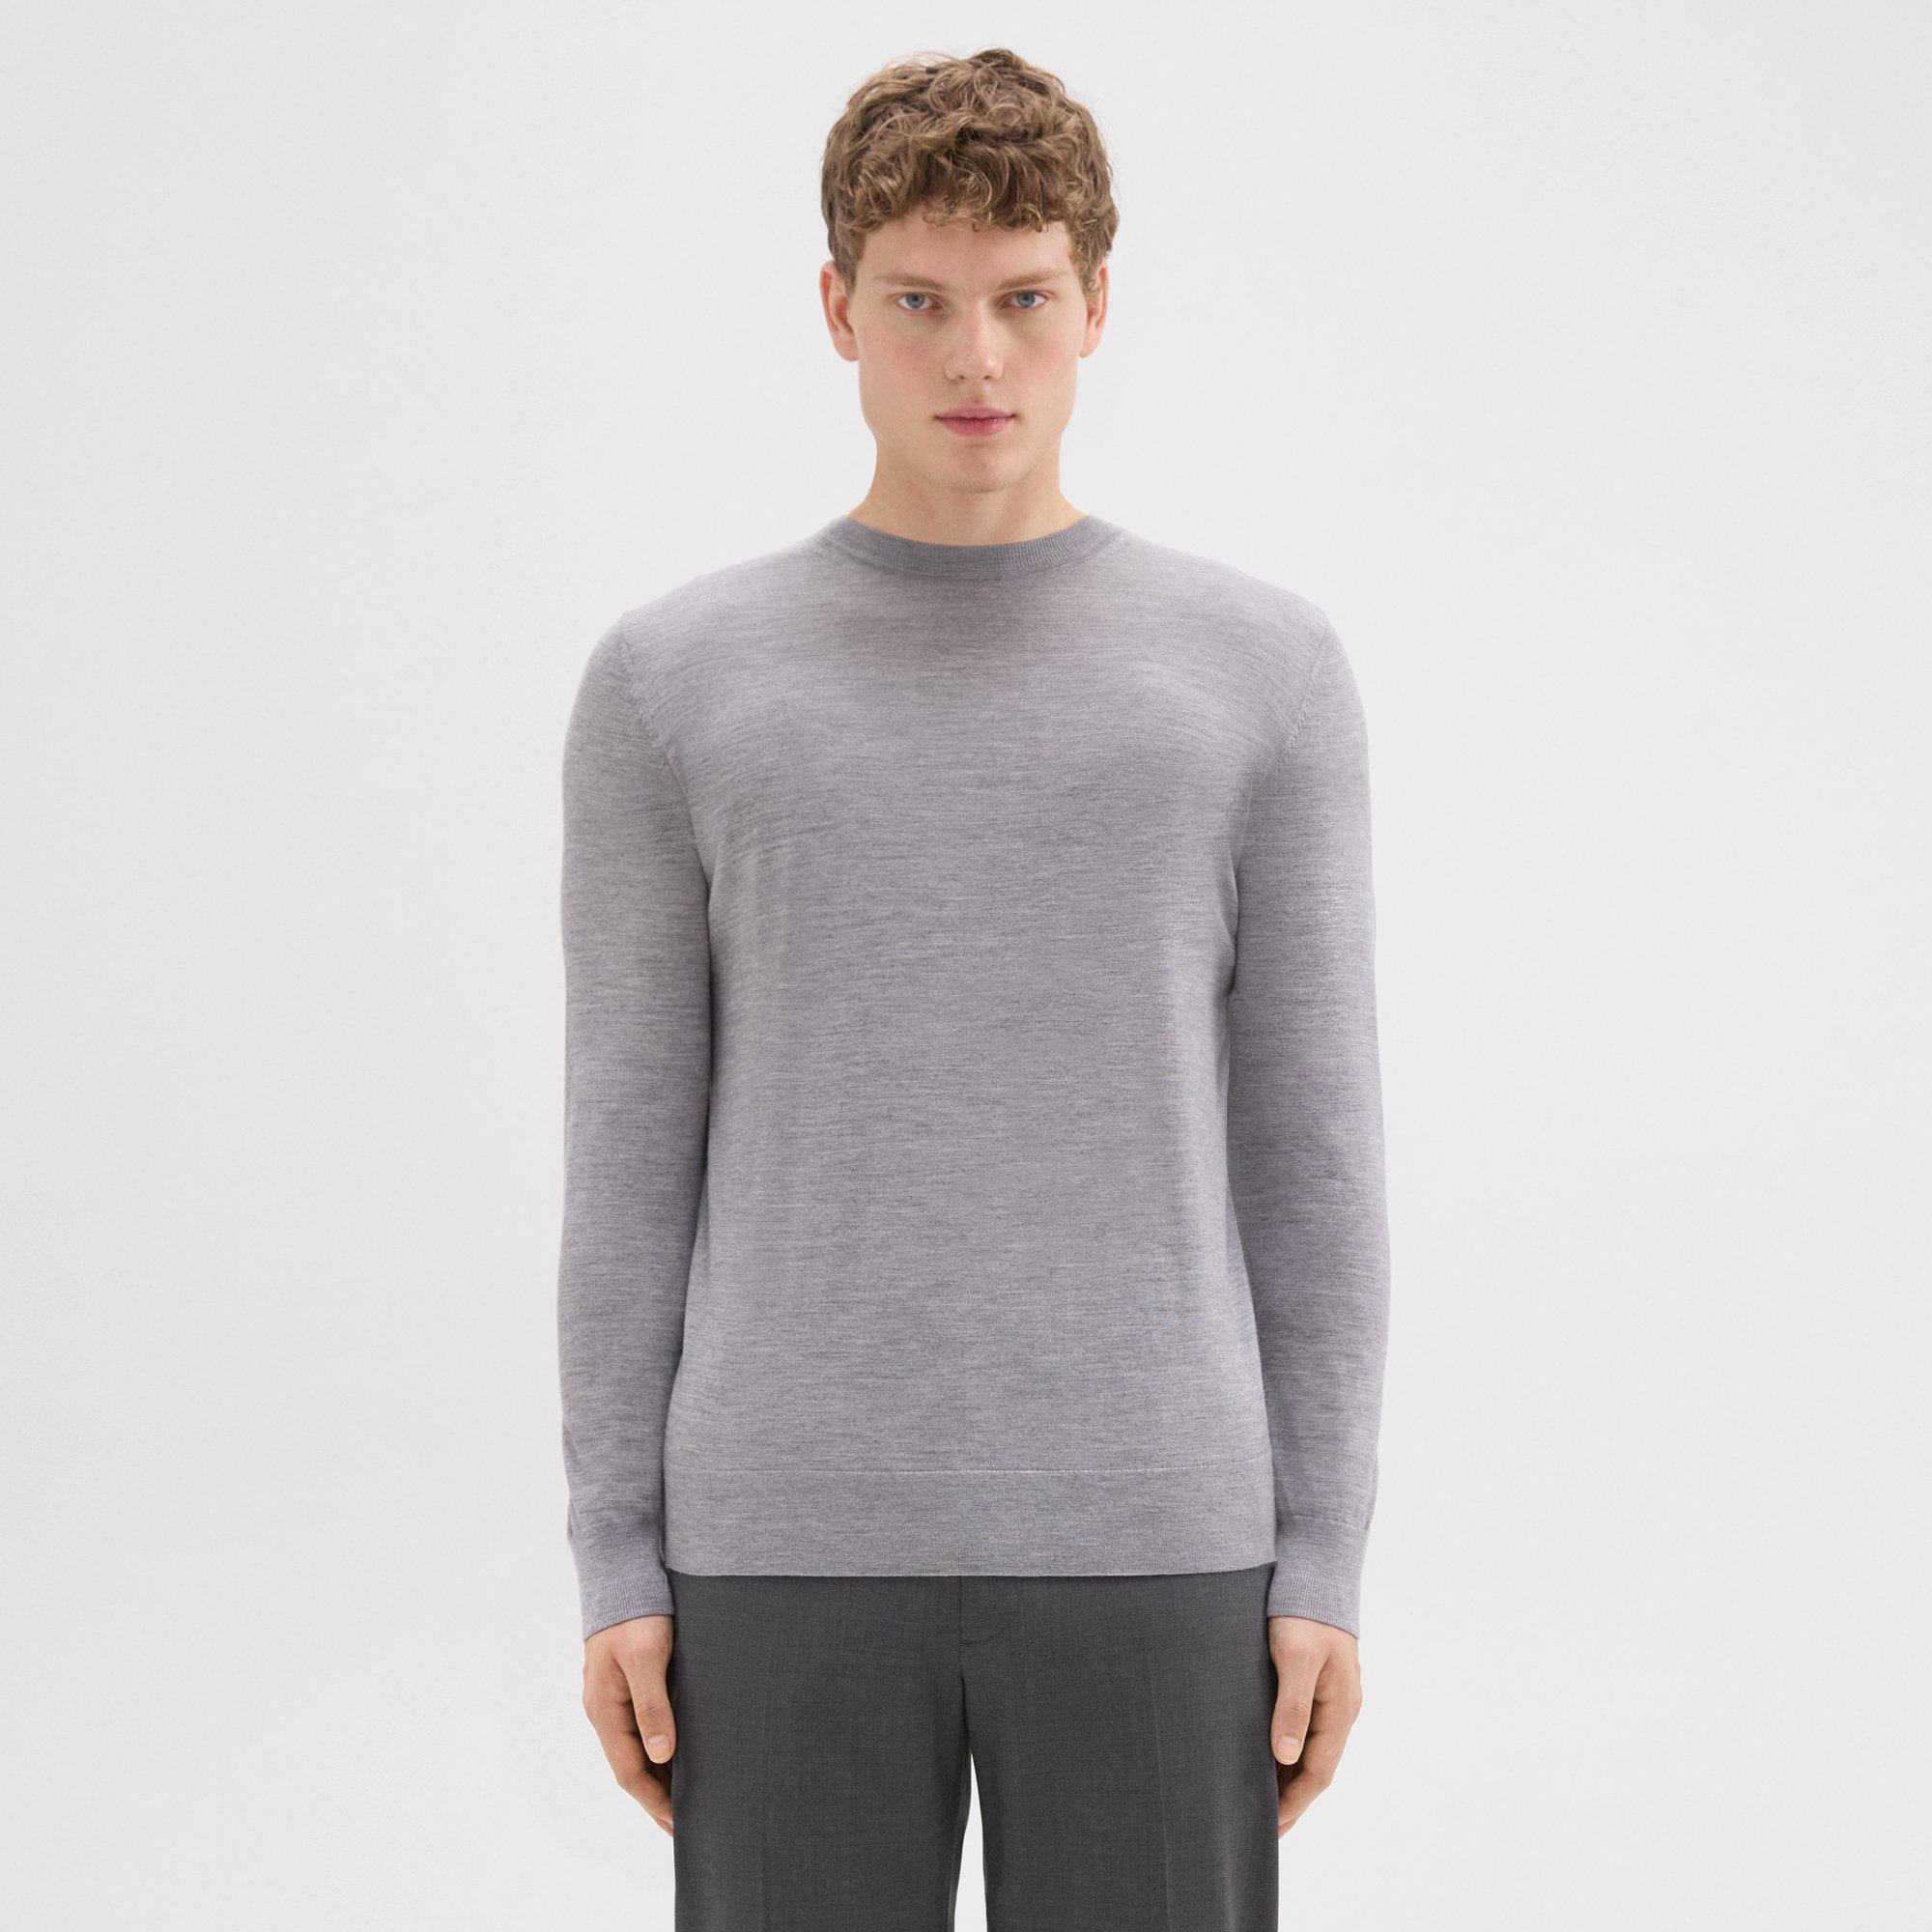 Theory Crewneck Sweater in Regal Wool